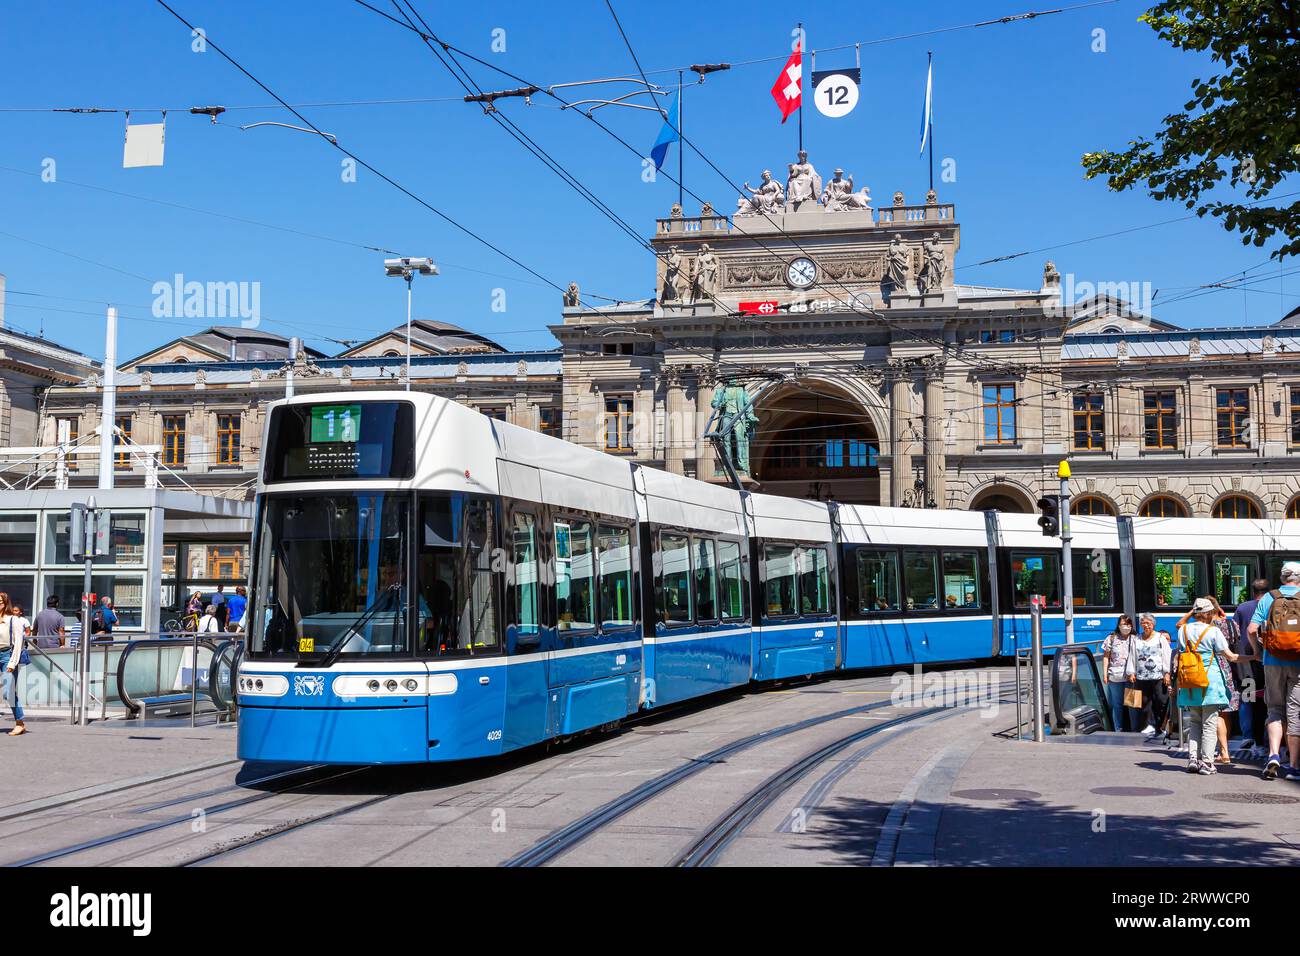 Zurigo, Svizzera - 10 agosto 2023: Bahnhofstrasse con tram tipo Bombardier Flexity 2 trasporto pubblico nella città di Zurigo, Svizzera. Foto Stock